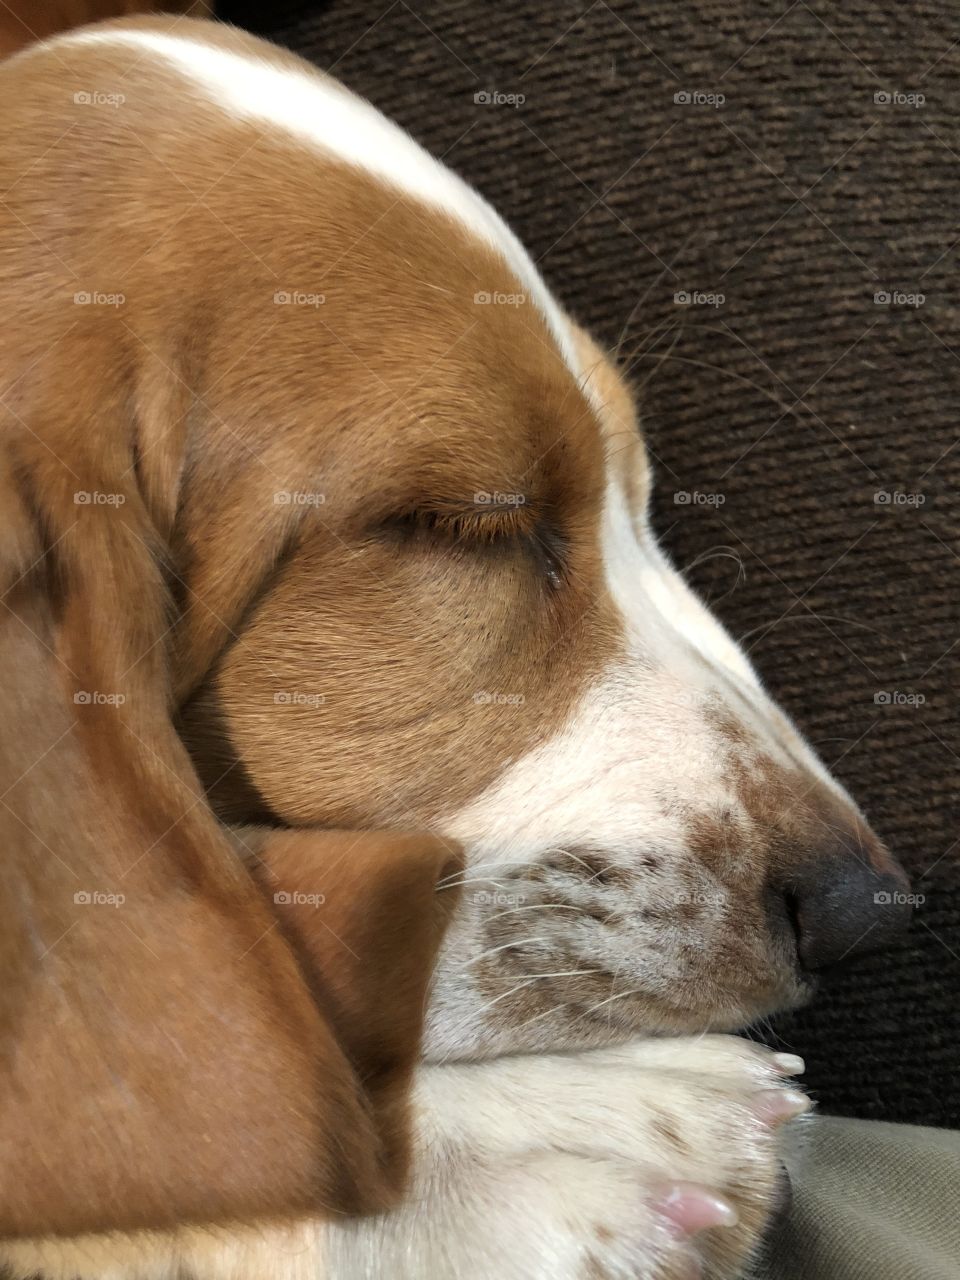 Sleeping Basset hound